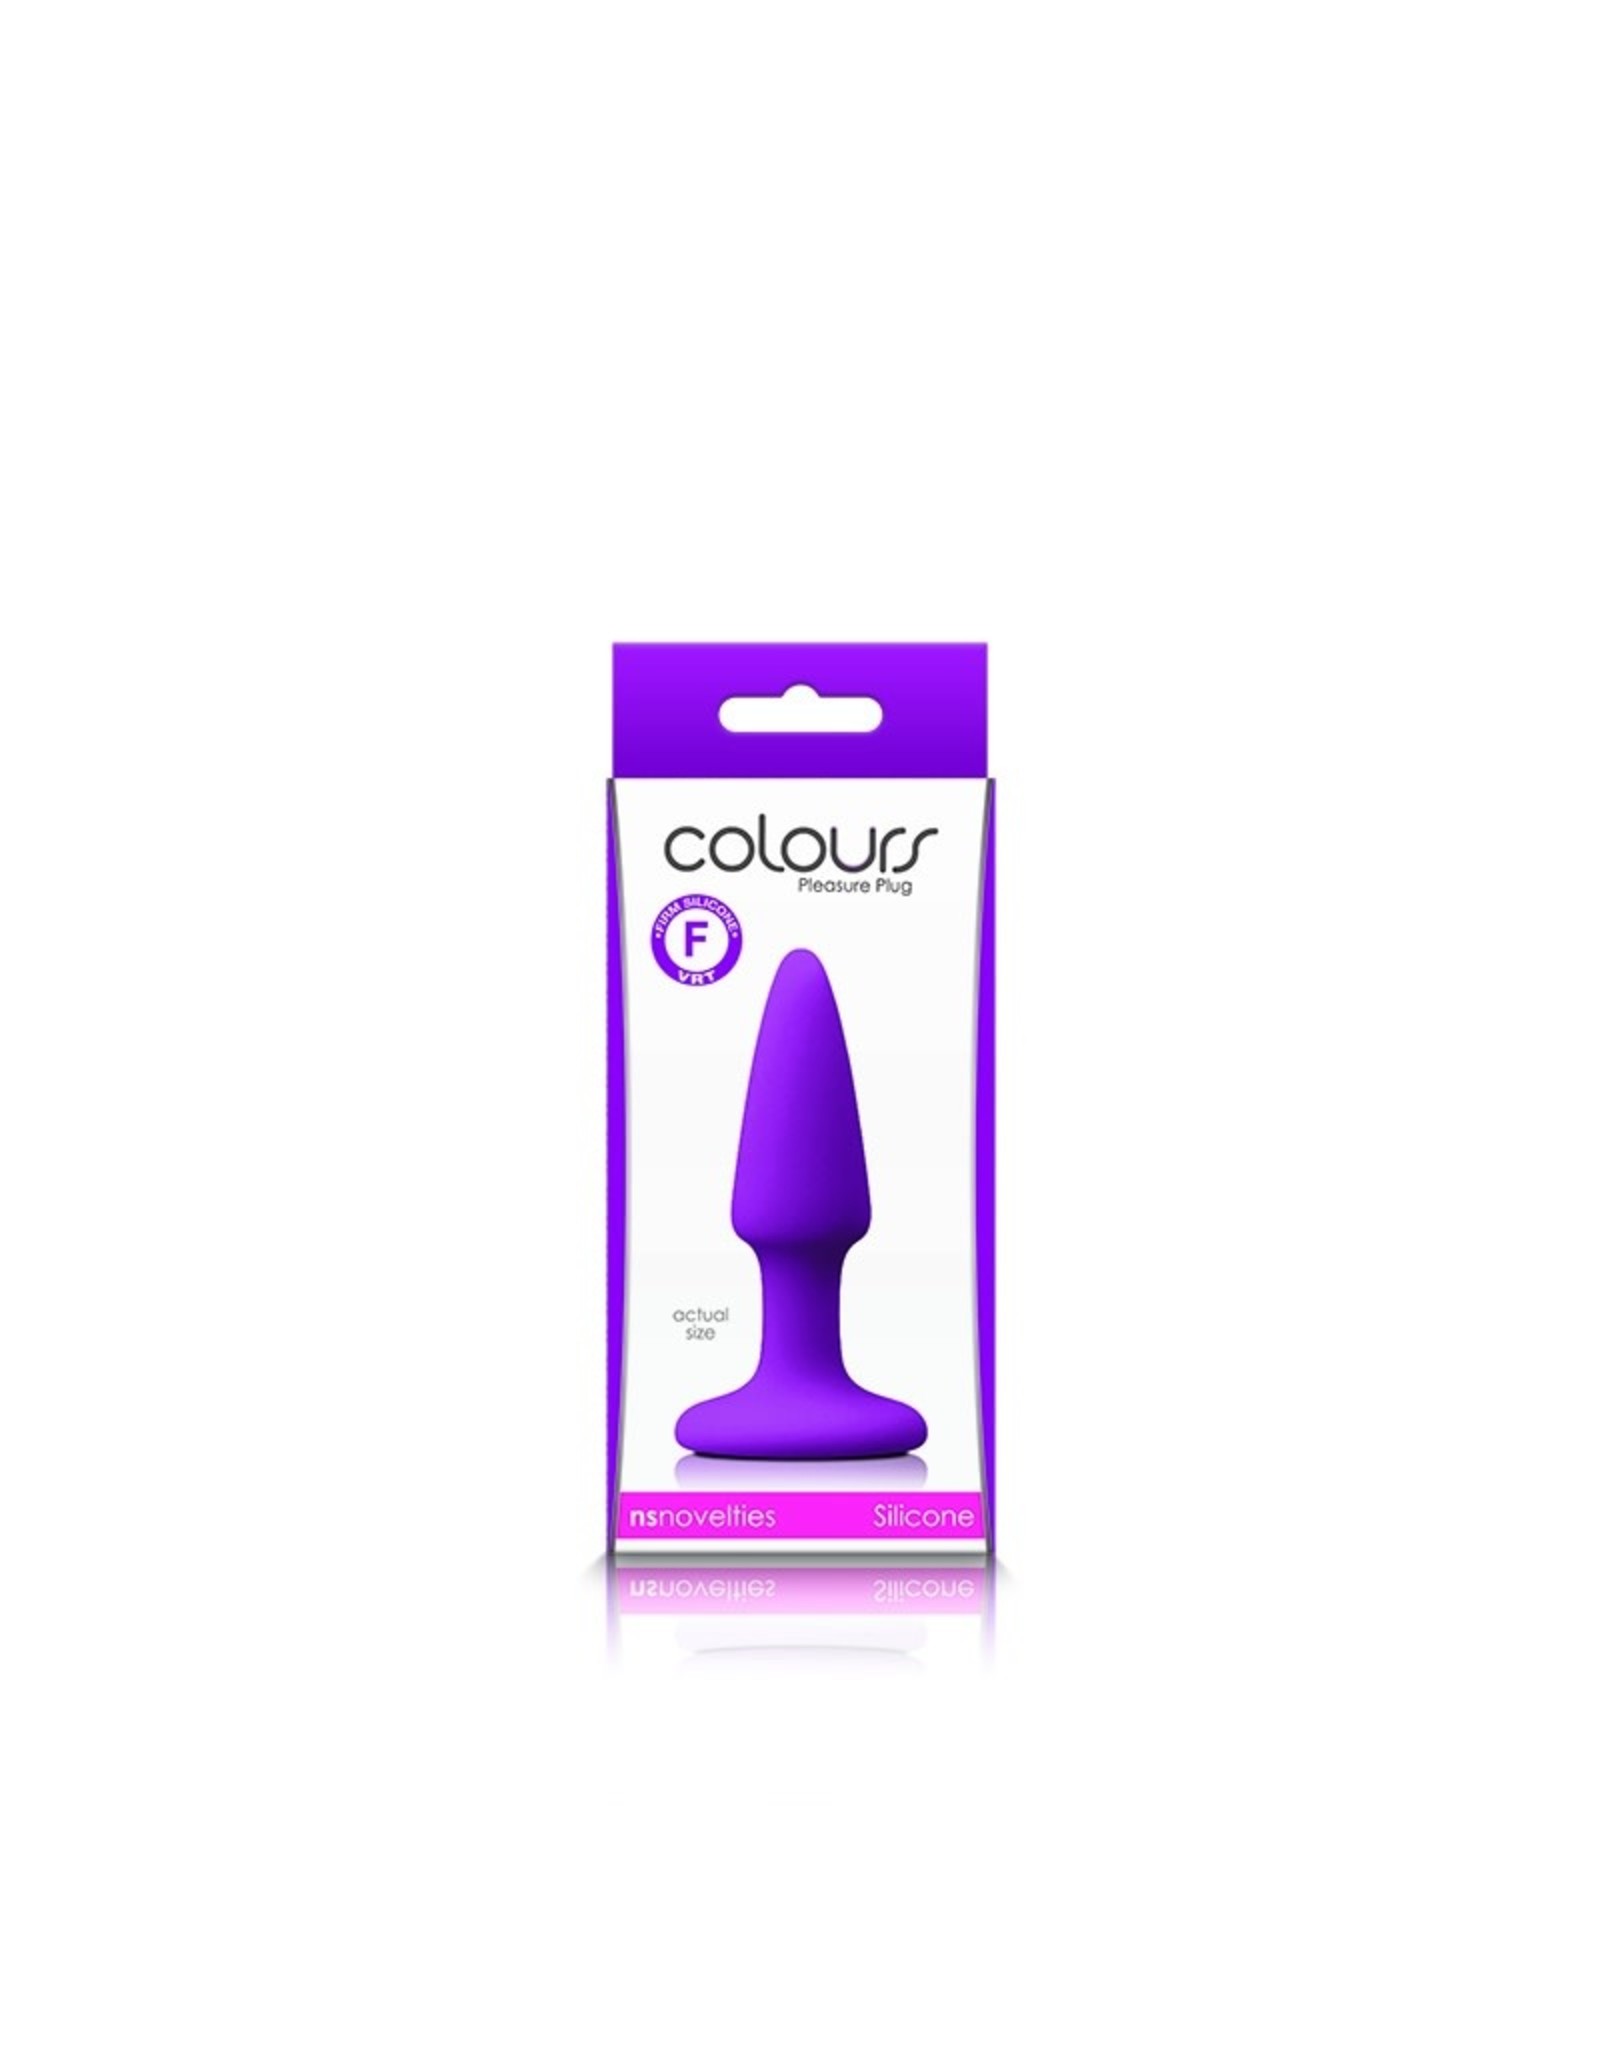 NS Novelties Colours - Mini Plug (purple)